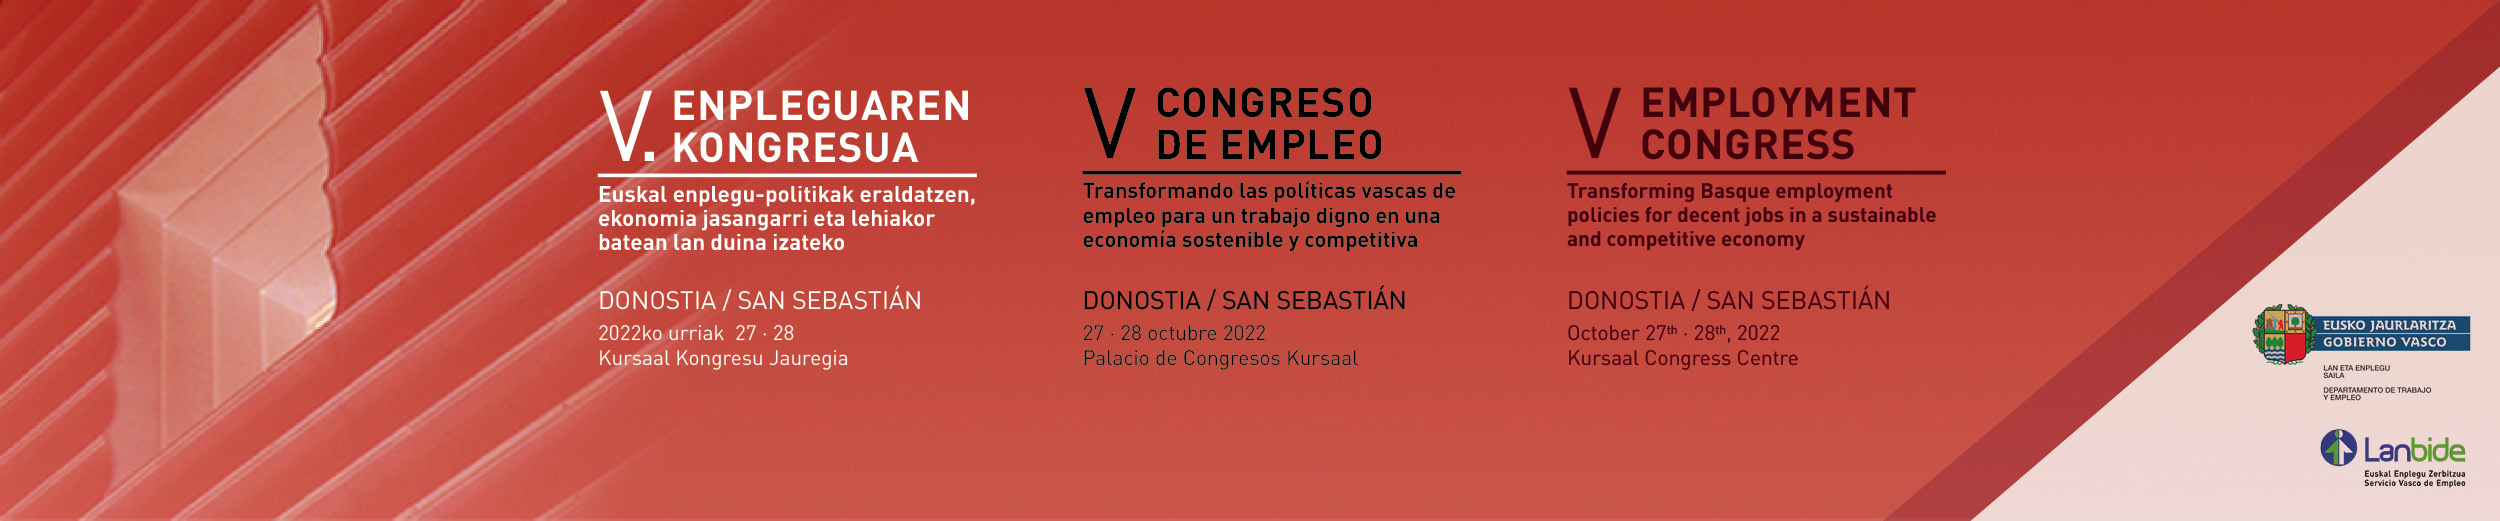 IV Employment Congress 2022